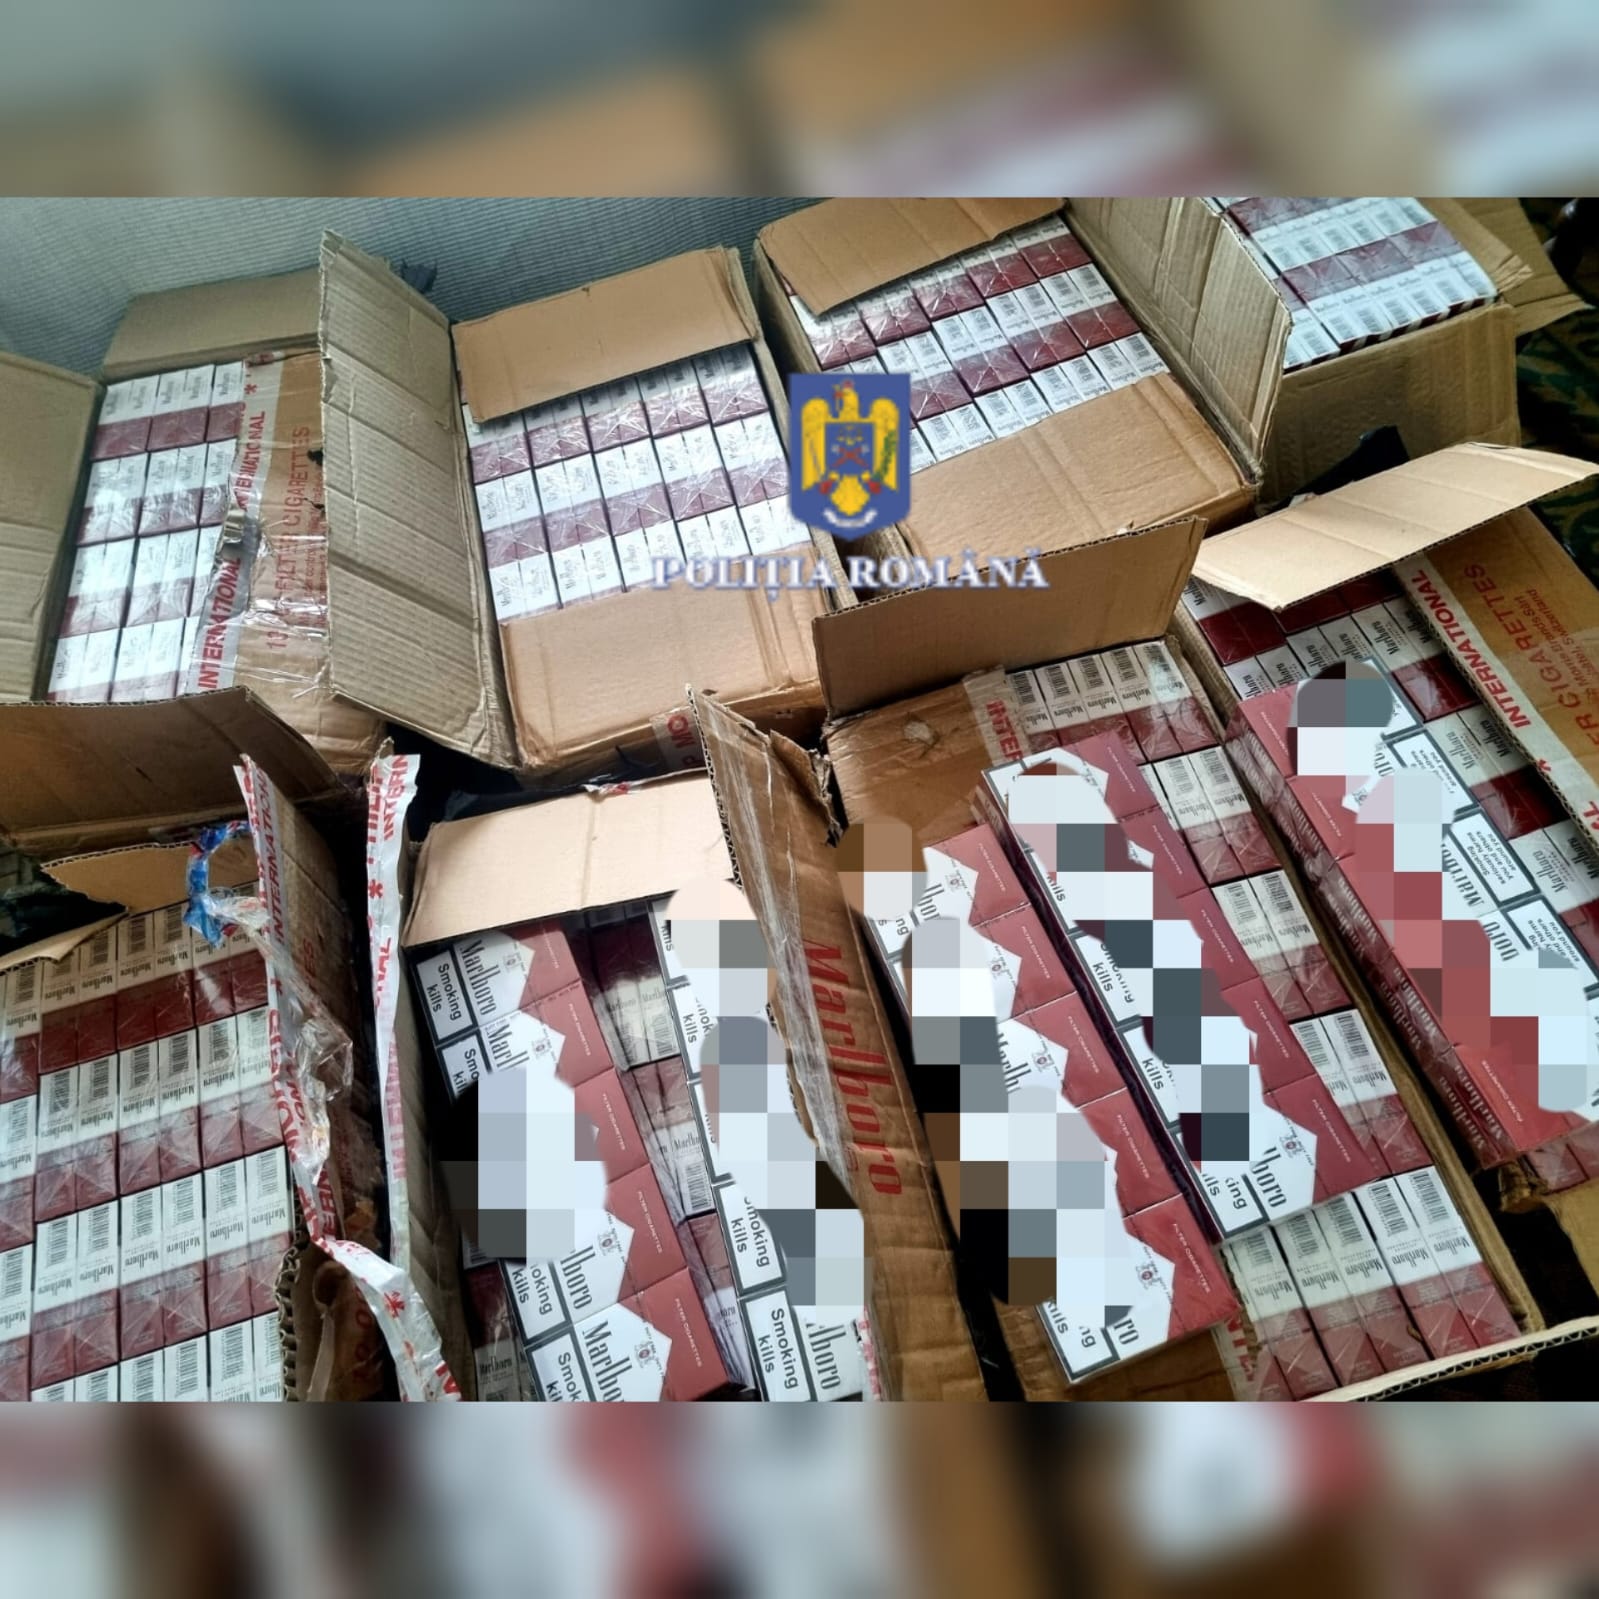 6150 de pachete cu țigări confiscate de polițiști în urma unei percheziții